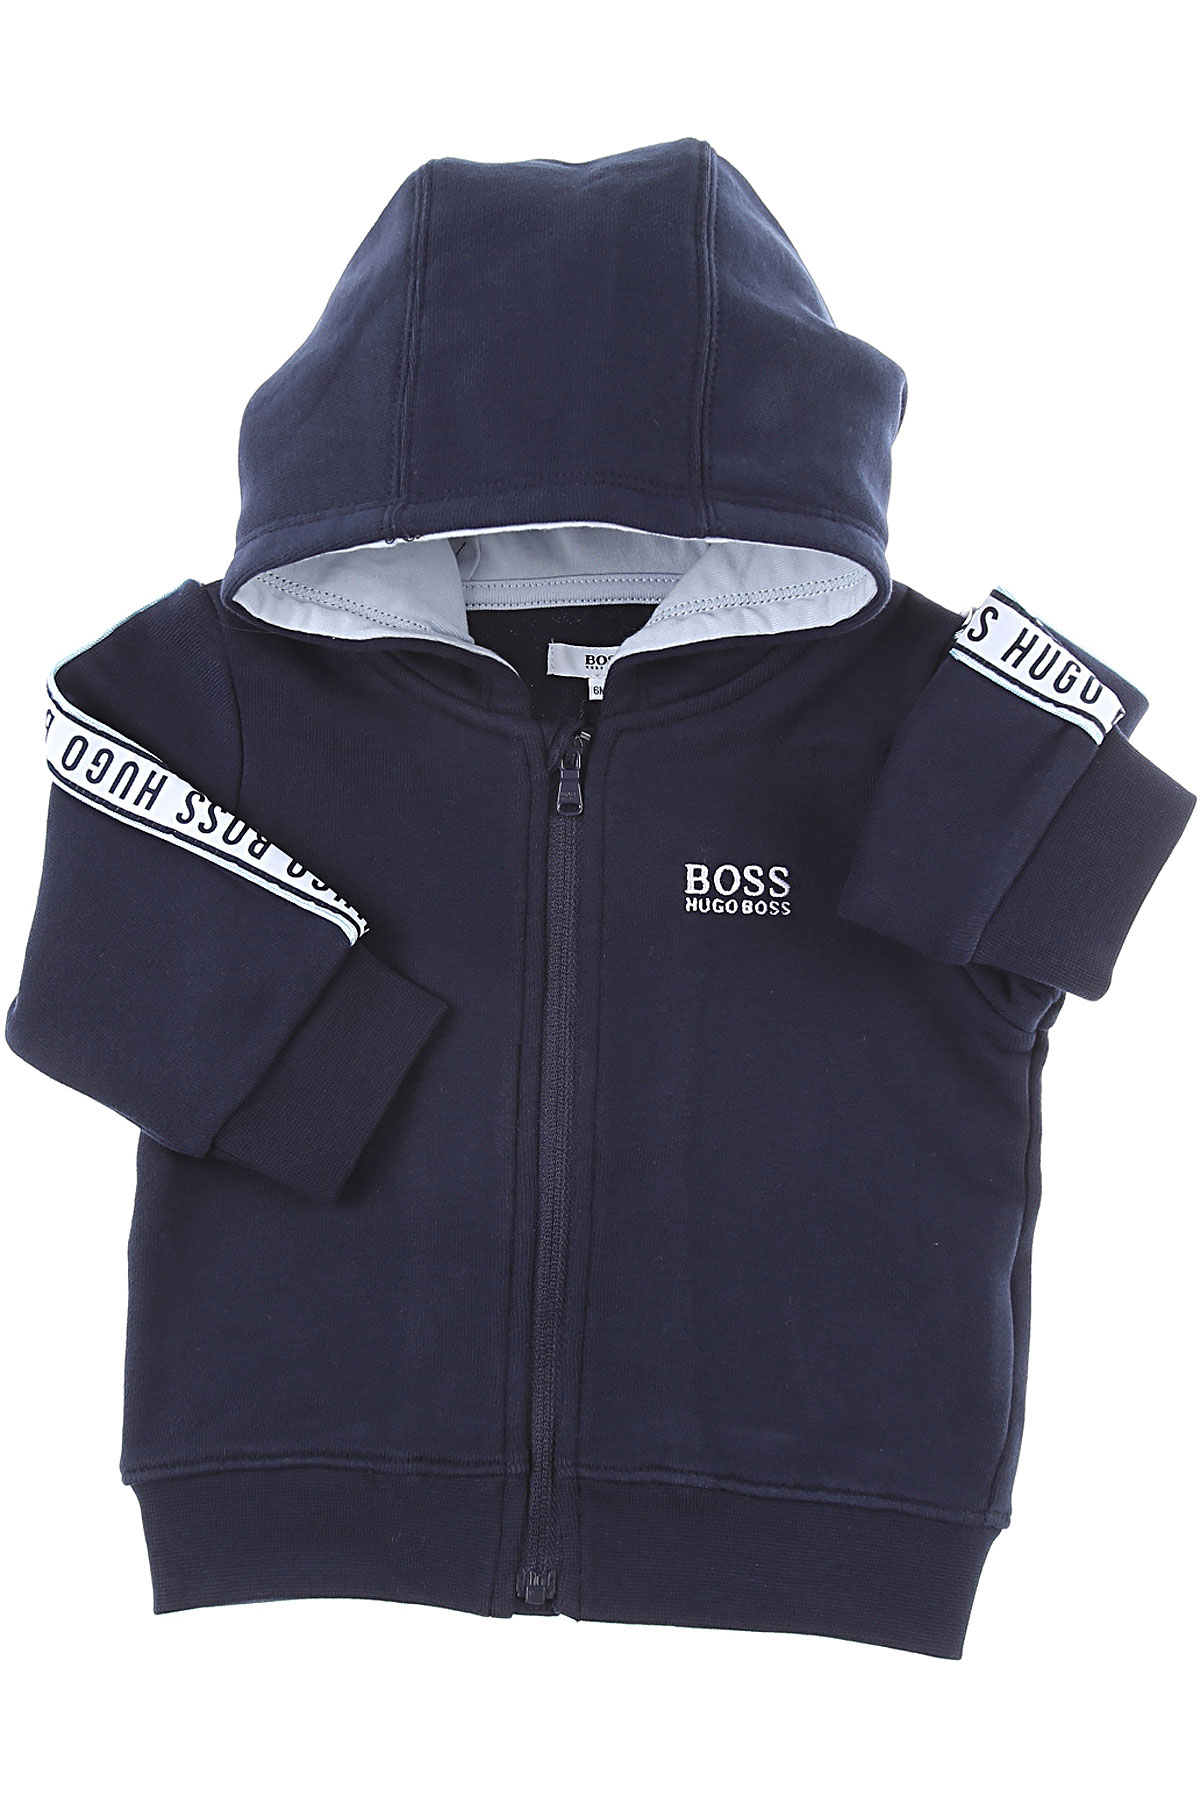 Hugo Boss Baby Sweatshirt & Kapuzenpullover für Jungen Günstig im Sale, Blau, Baumwolle, 2017, 12 M 18M 3M 6M 9M